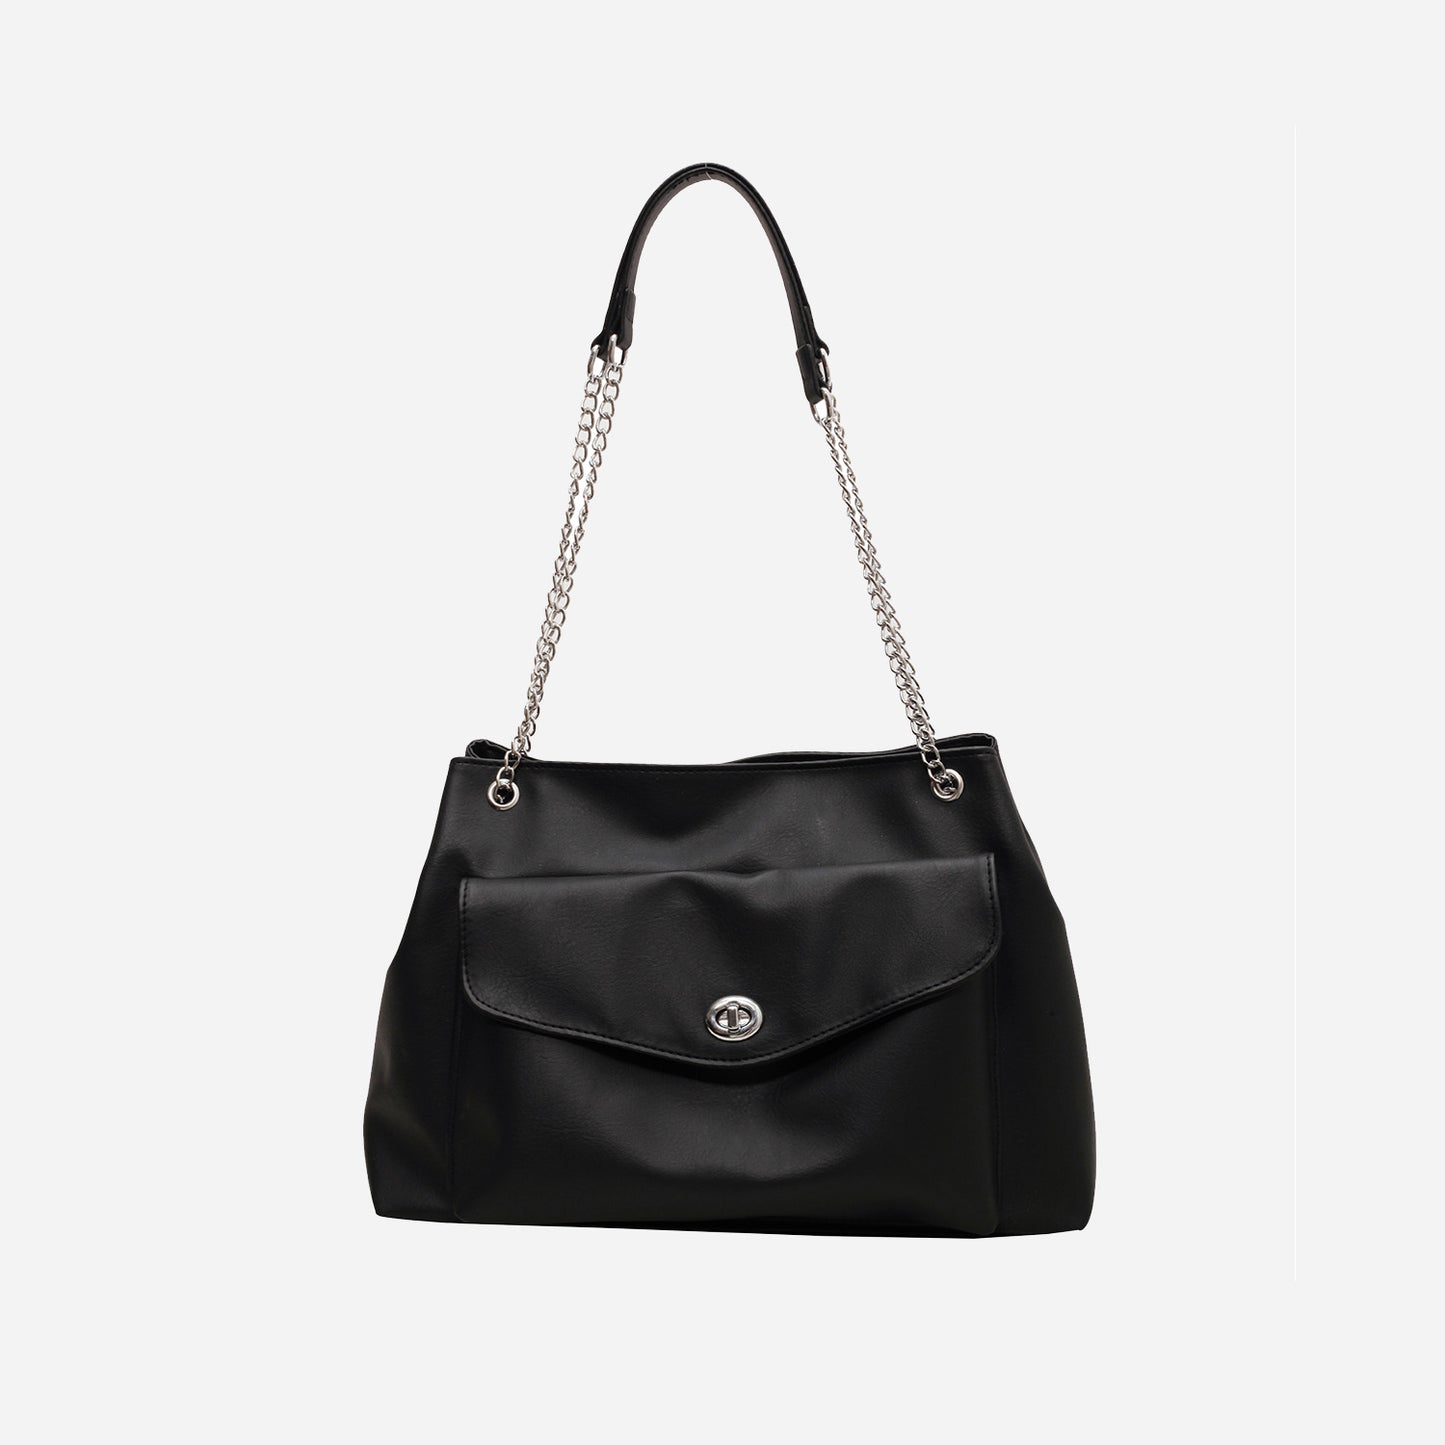 PU Leather Shoulder Bag Black One Size